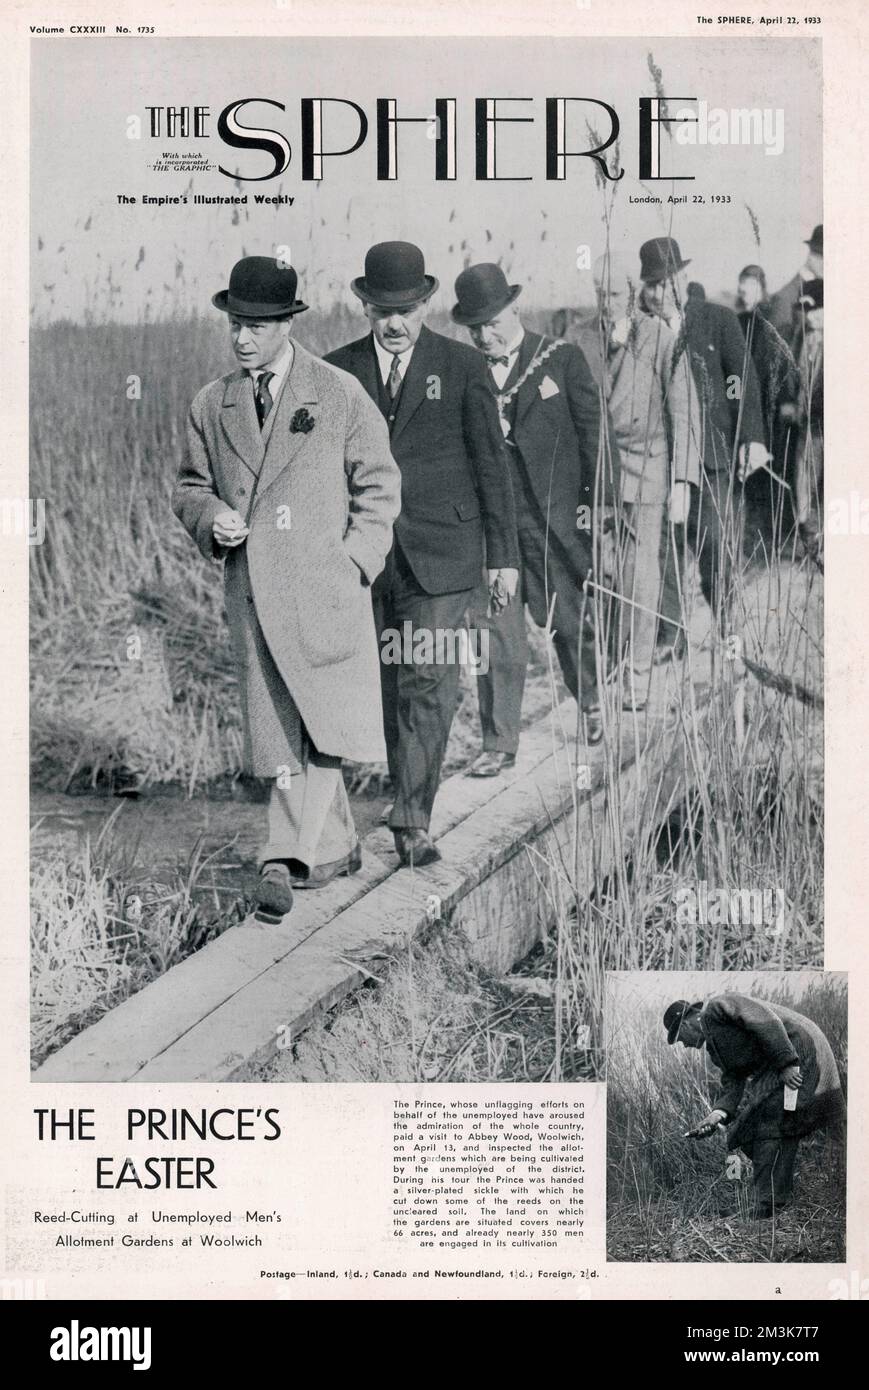 Frontabdeckung von The Sphere, April 1933, zeigt Edward, Prince of Wales, später König Edward VIII und Herzog von Windsor (1894-1972), die die Zuteilungsgärten der Arbeitslosen in Woolwich inspizieren. Datum: 22.. April 1933 Stockfoto